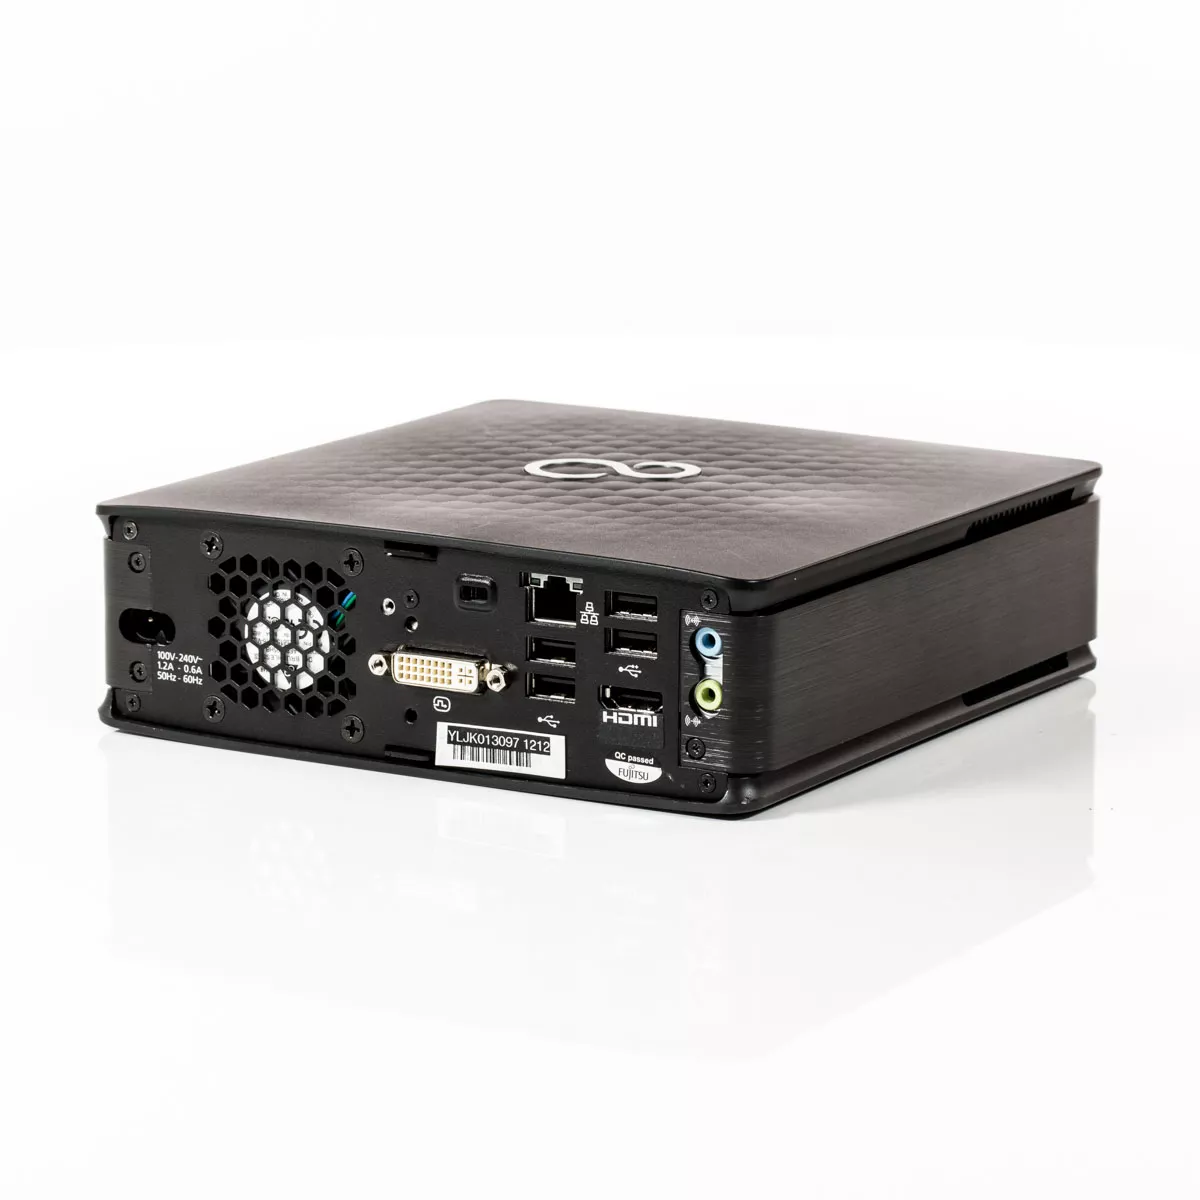 Fujitsu Esprimo Q910 Core i5 3470T 2,90 GHz